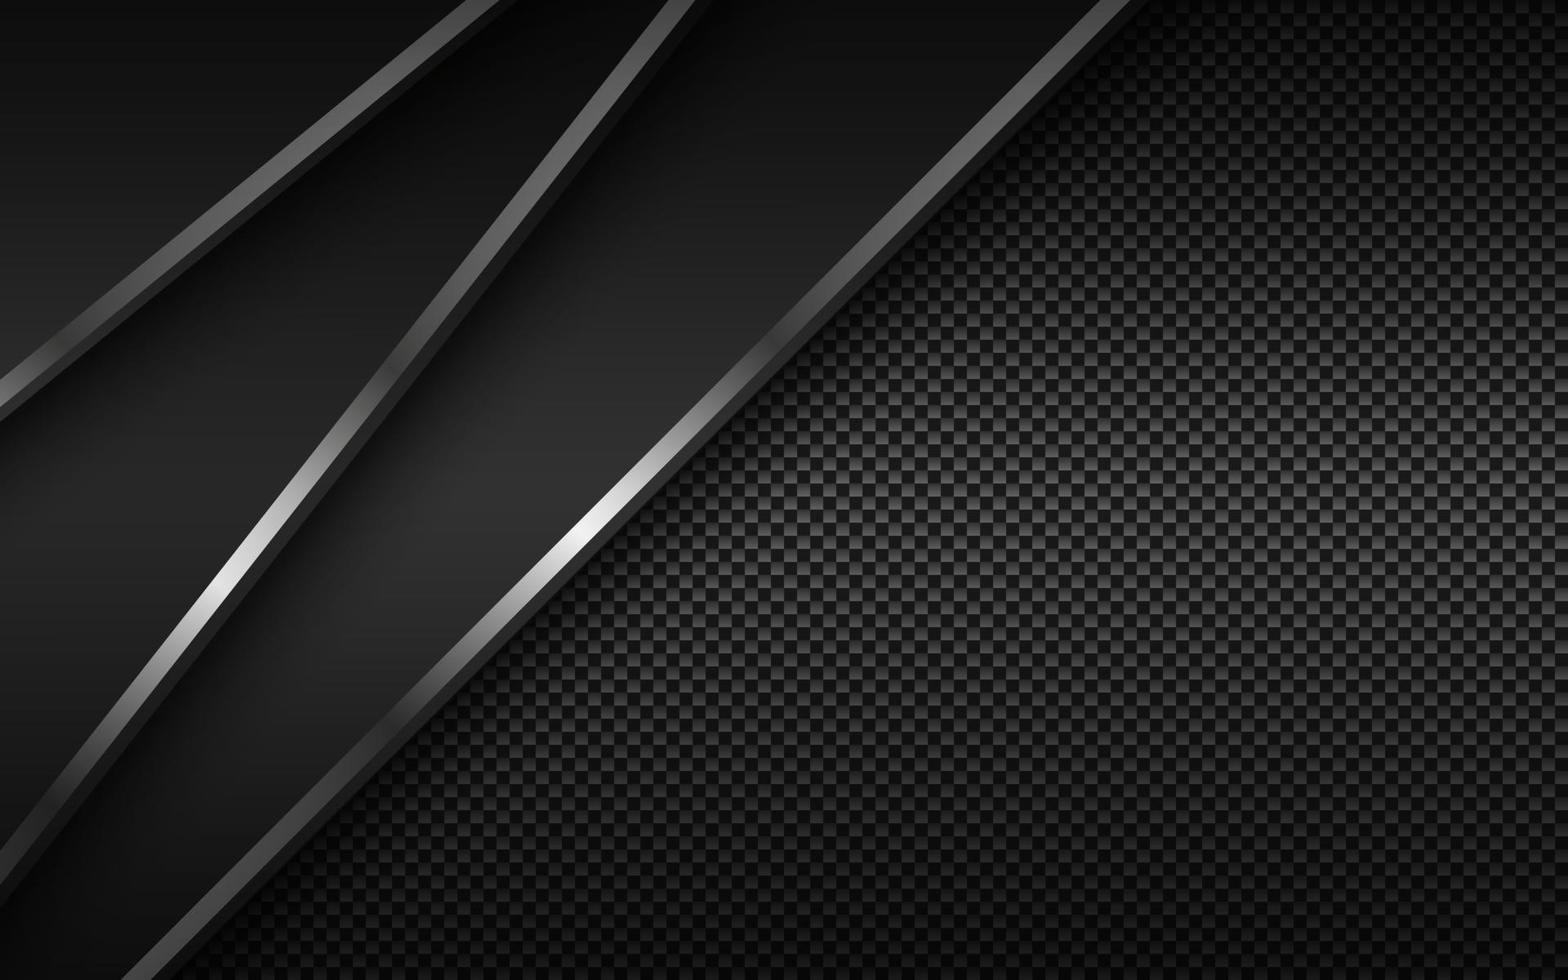 fundo de material moderno preto com linhas diagonais de prata e textura de fibra de carbono. design para o seu negócio. fundo widescreen abstrato do vetor